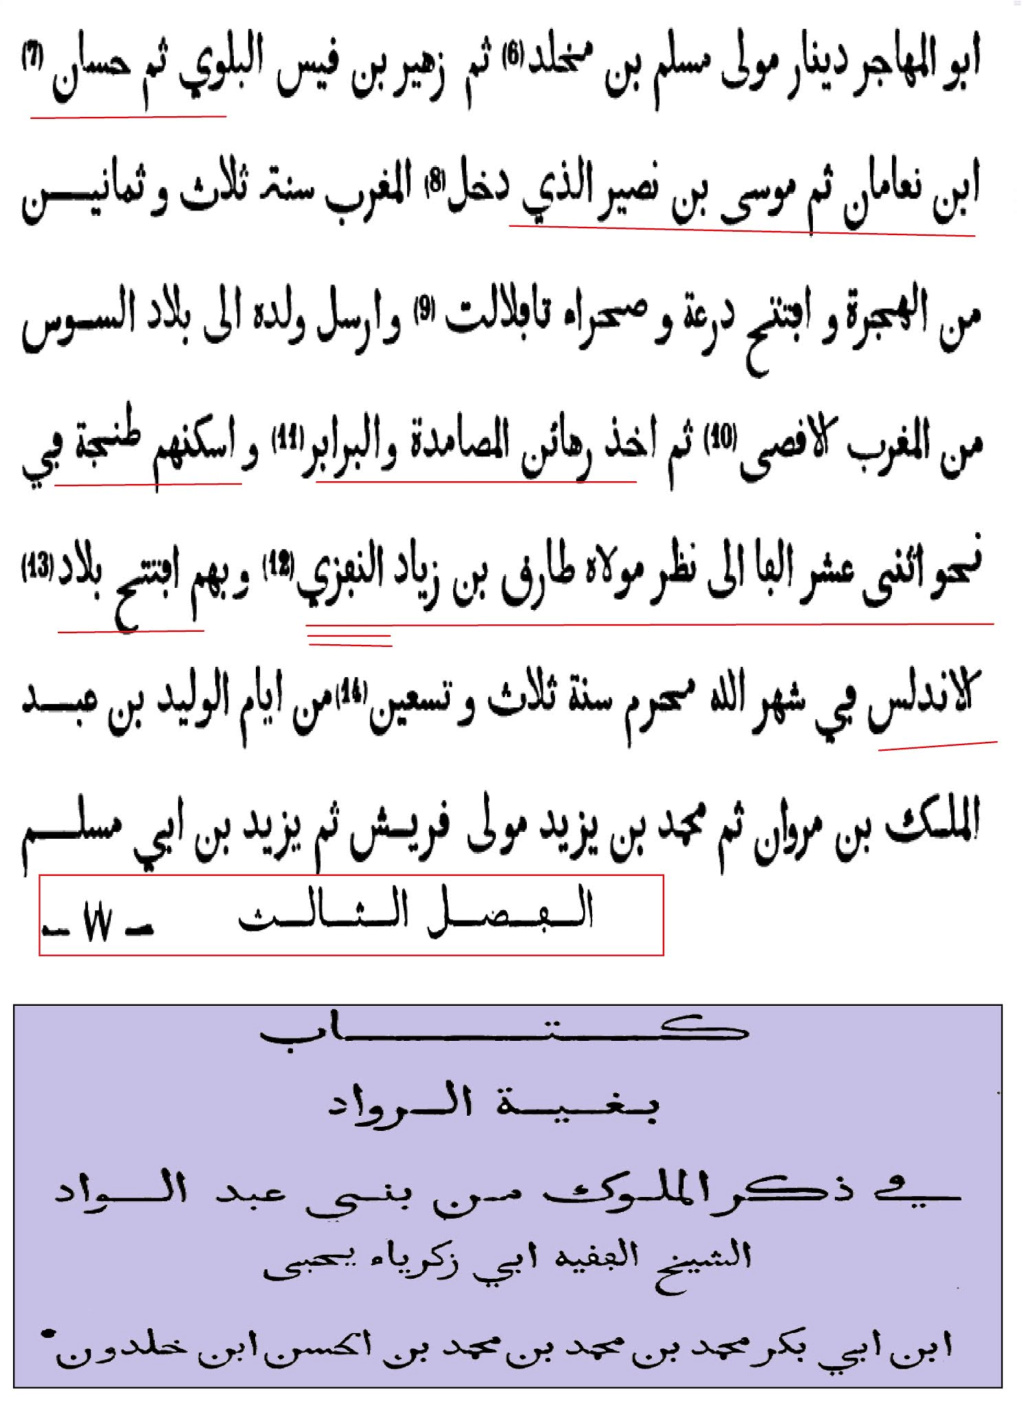 أصول طارق بن زياد الأمازيغية على ضوء النصوص العريية الاسلامية والإسبانية 1-----26